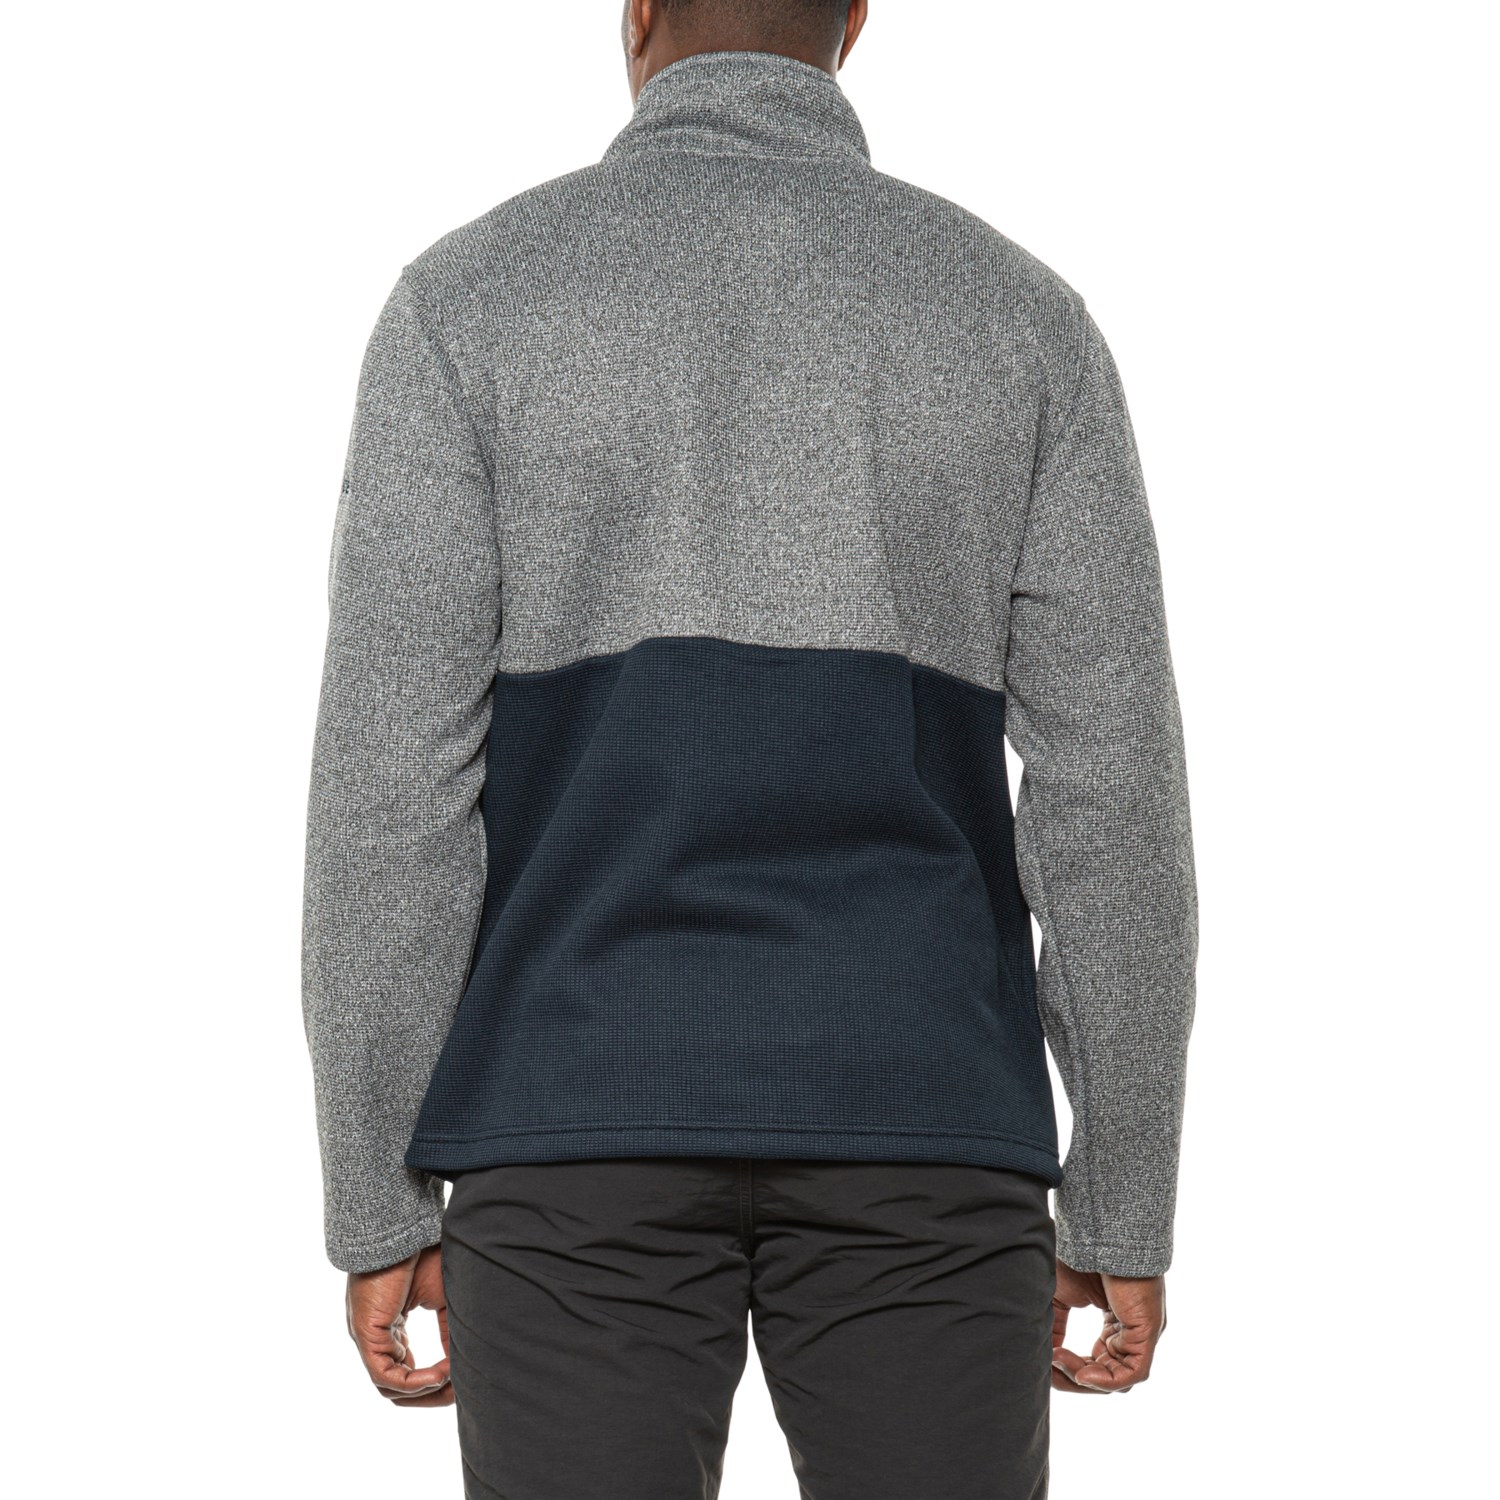 Spyder Mendoza Bonded Sweater Fleece Full-Zip Jacket